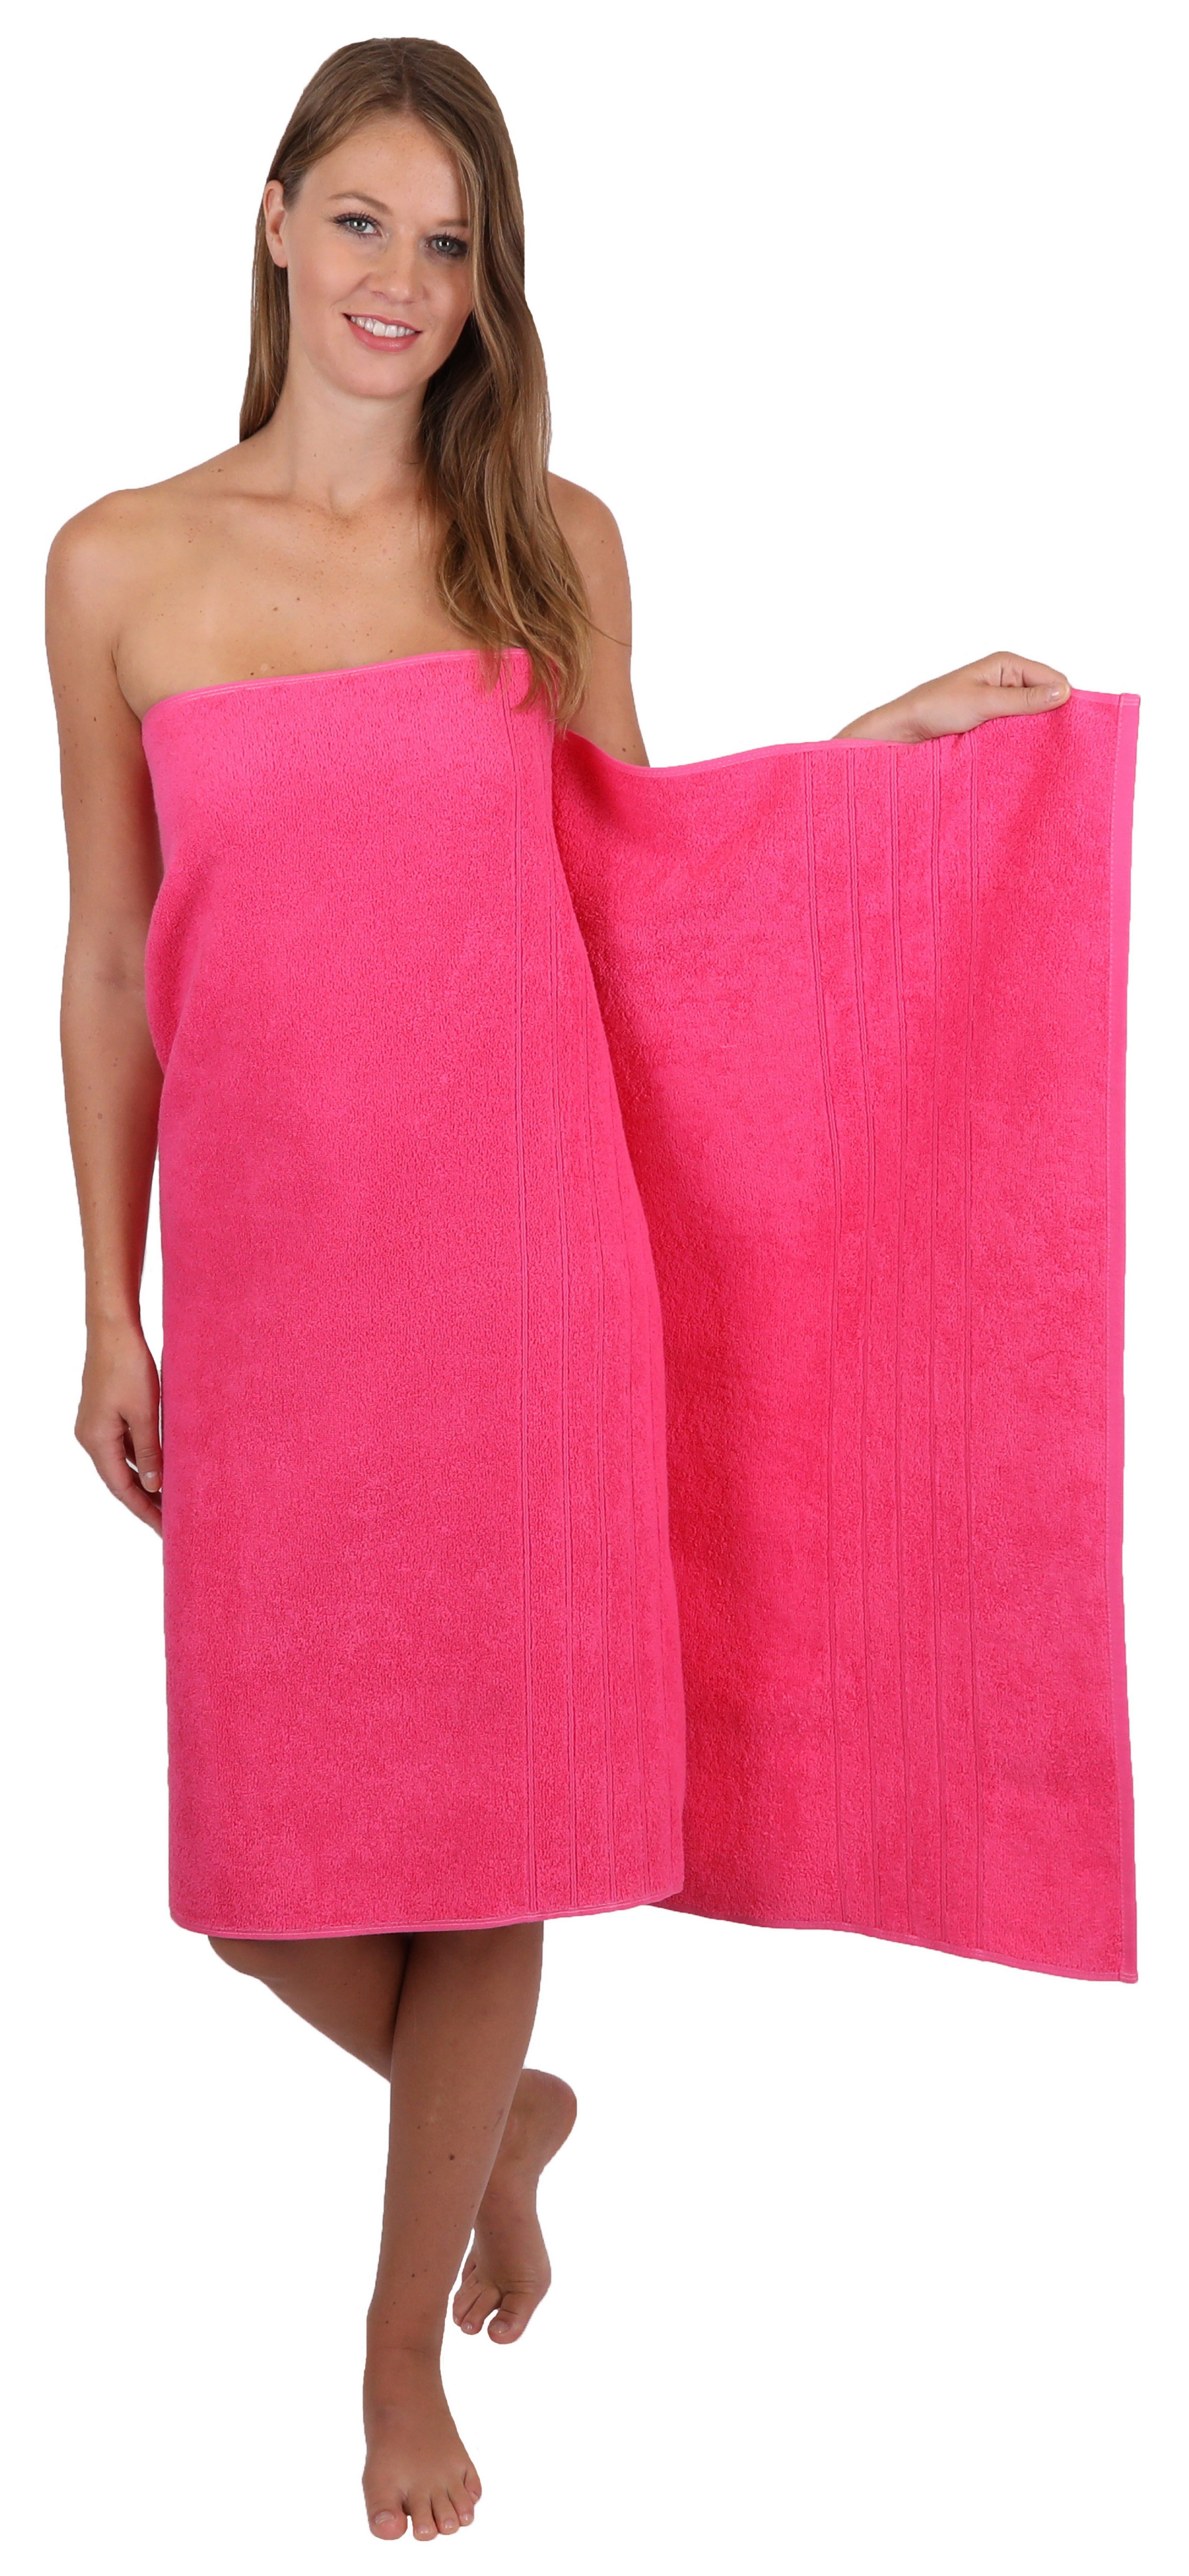 Duschtücher Baumwolle 2 100% Fuchsia (8-tlg) Seiftücher Handtuch Farbe Set 2 100% und 2 8-TLG. Handtuch-Set Betz 2 Baumwolle, Deluxe Badetücher Handtücher blau,